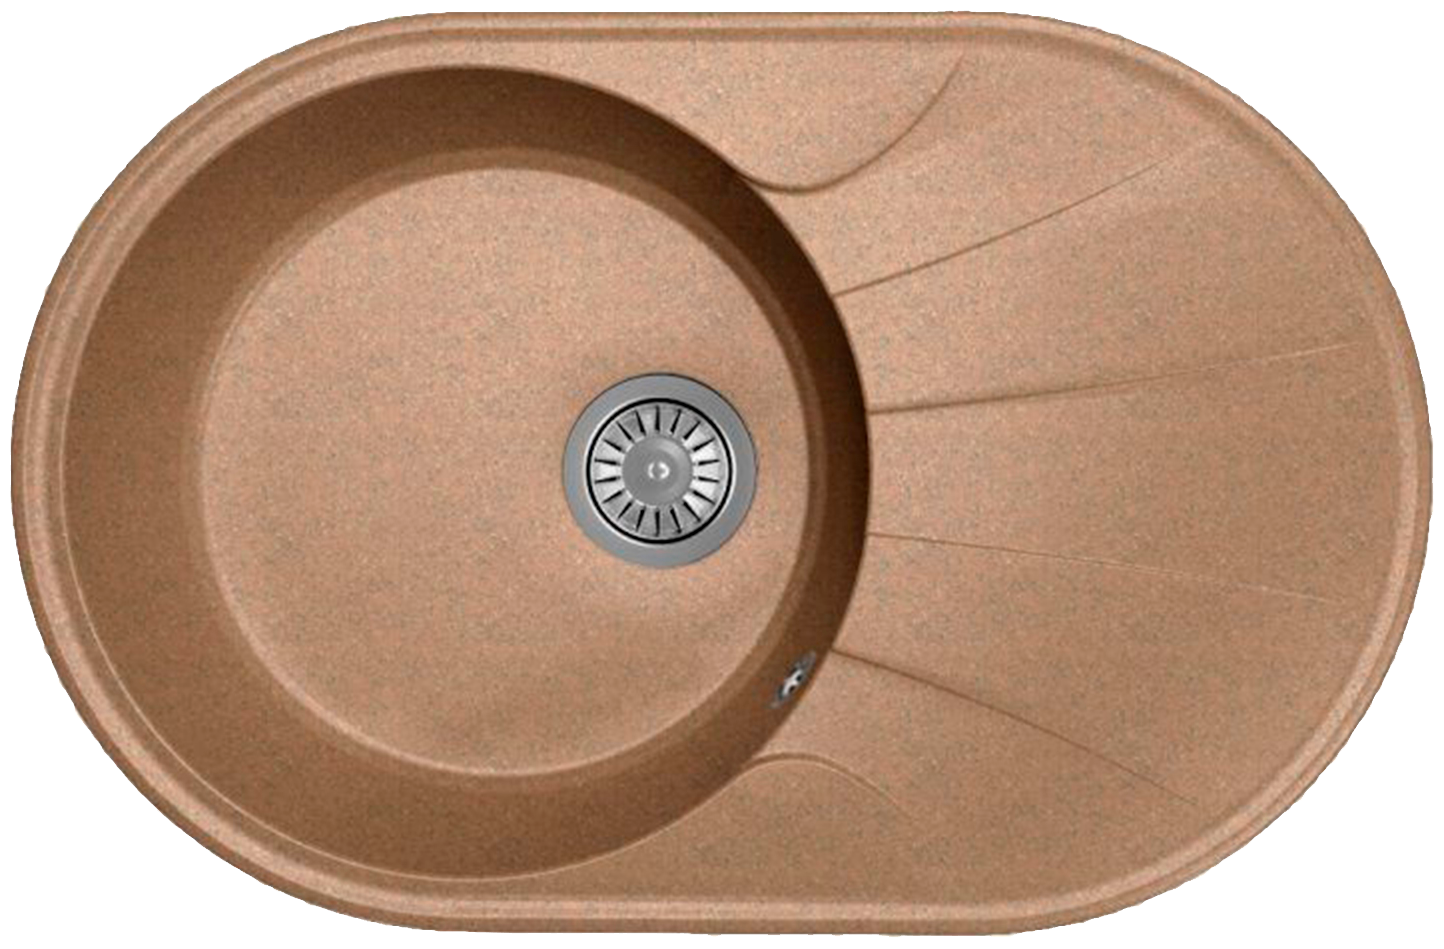 Мойка для кухни врезная каменная Dr. Gans Smart ВИОЛА-740, цвет терракот, с крылом, овальная, 740х480х197 мм / раковина для кухни